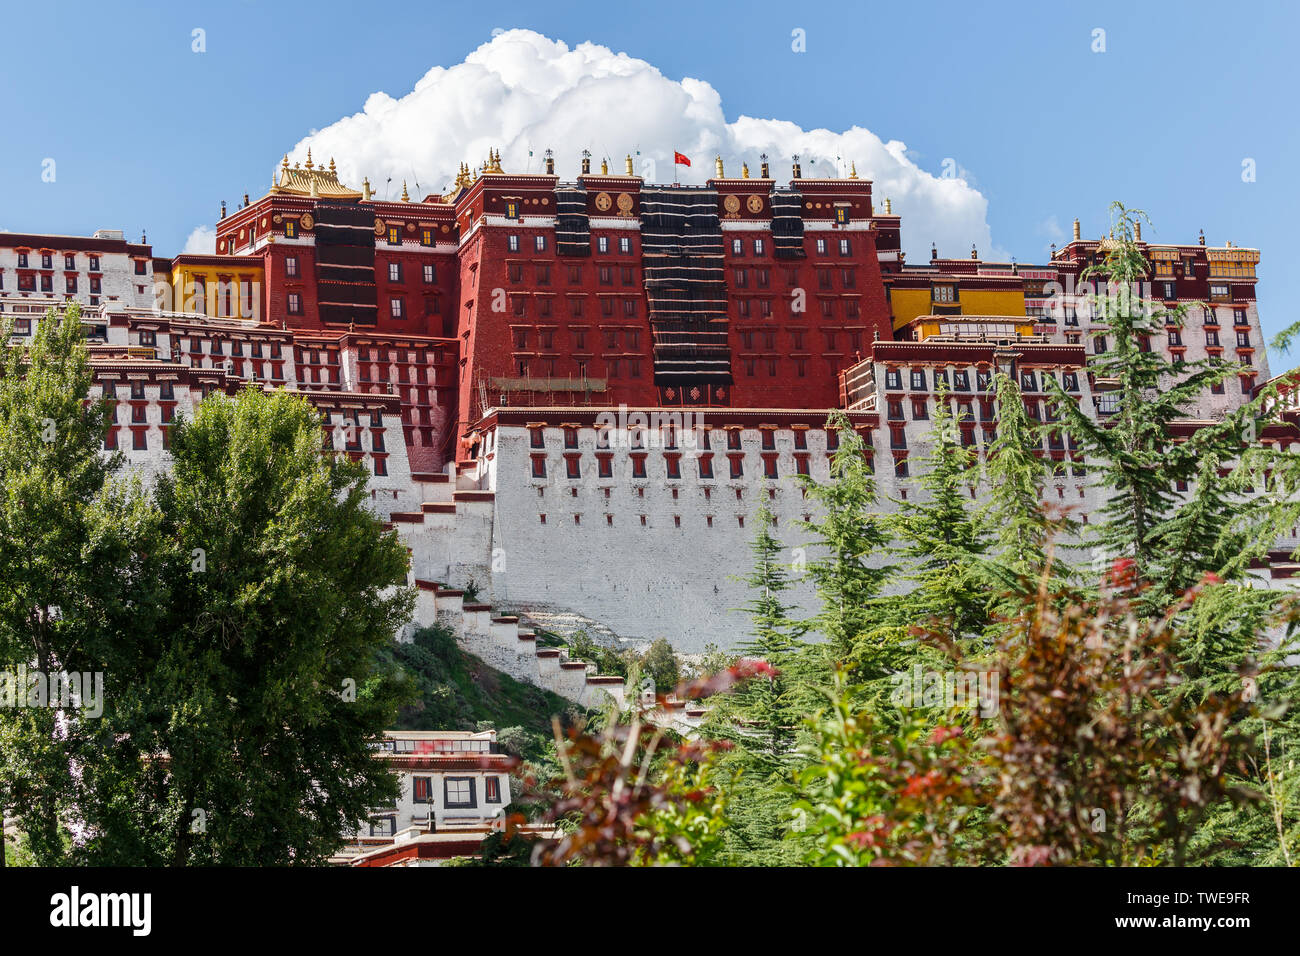 Vista sulla parte principale del palazzo del Potala (Lhasa, in Tibet) con il cielo blu e una grande nuvola in background. Verdi alberi sulla sinistra & destra completa la foto. Foto Stock